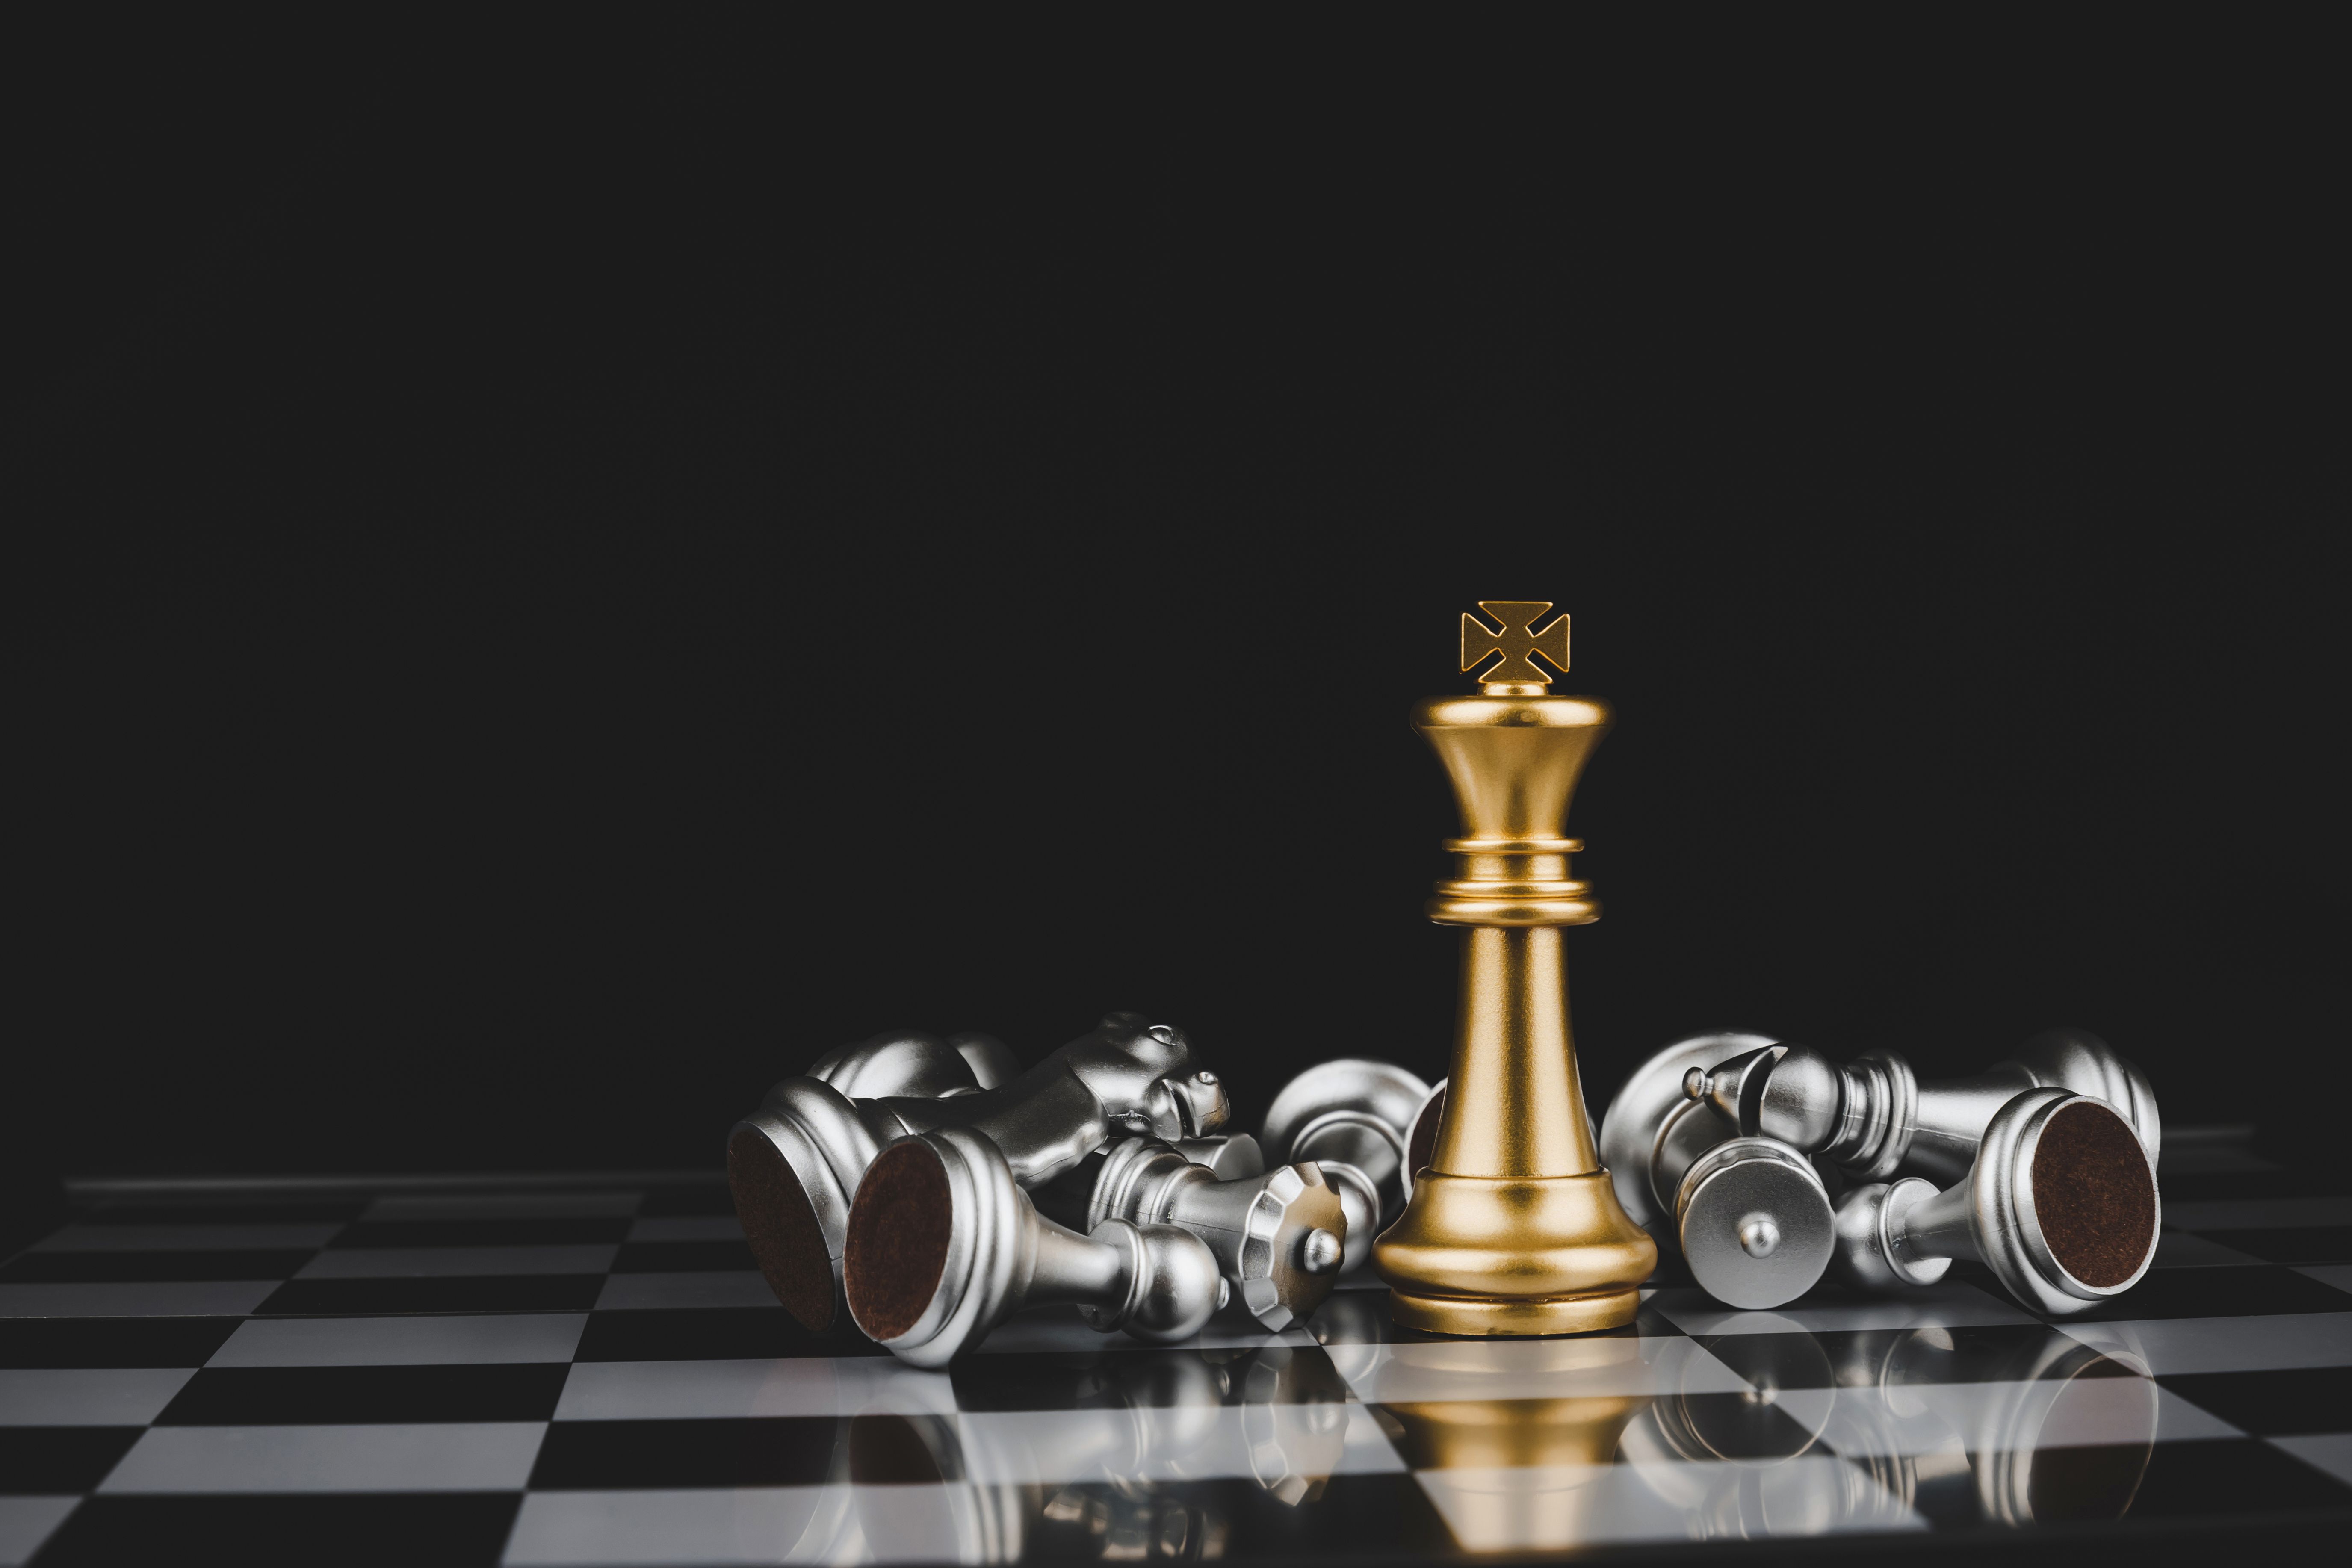 משחק המלכים: פסיכולוגיה על לוח השחמט